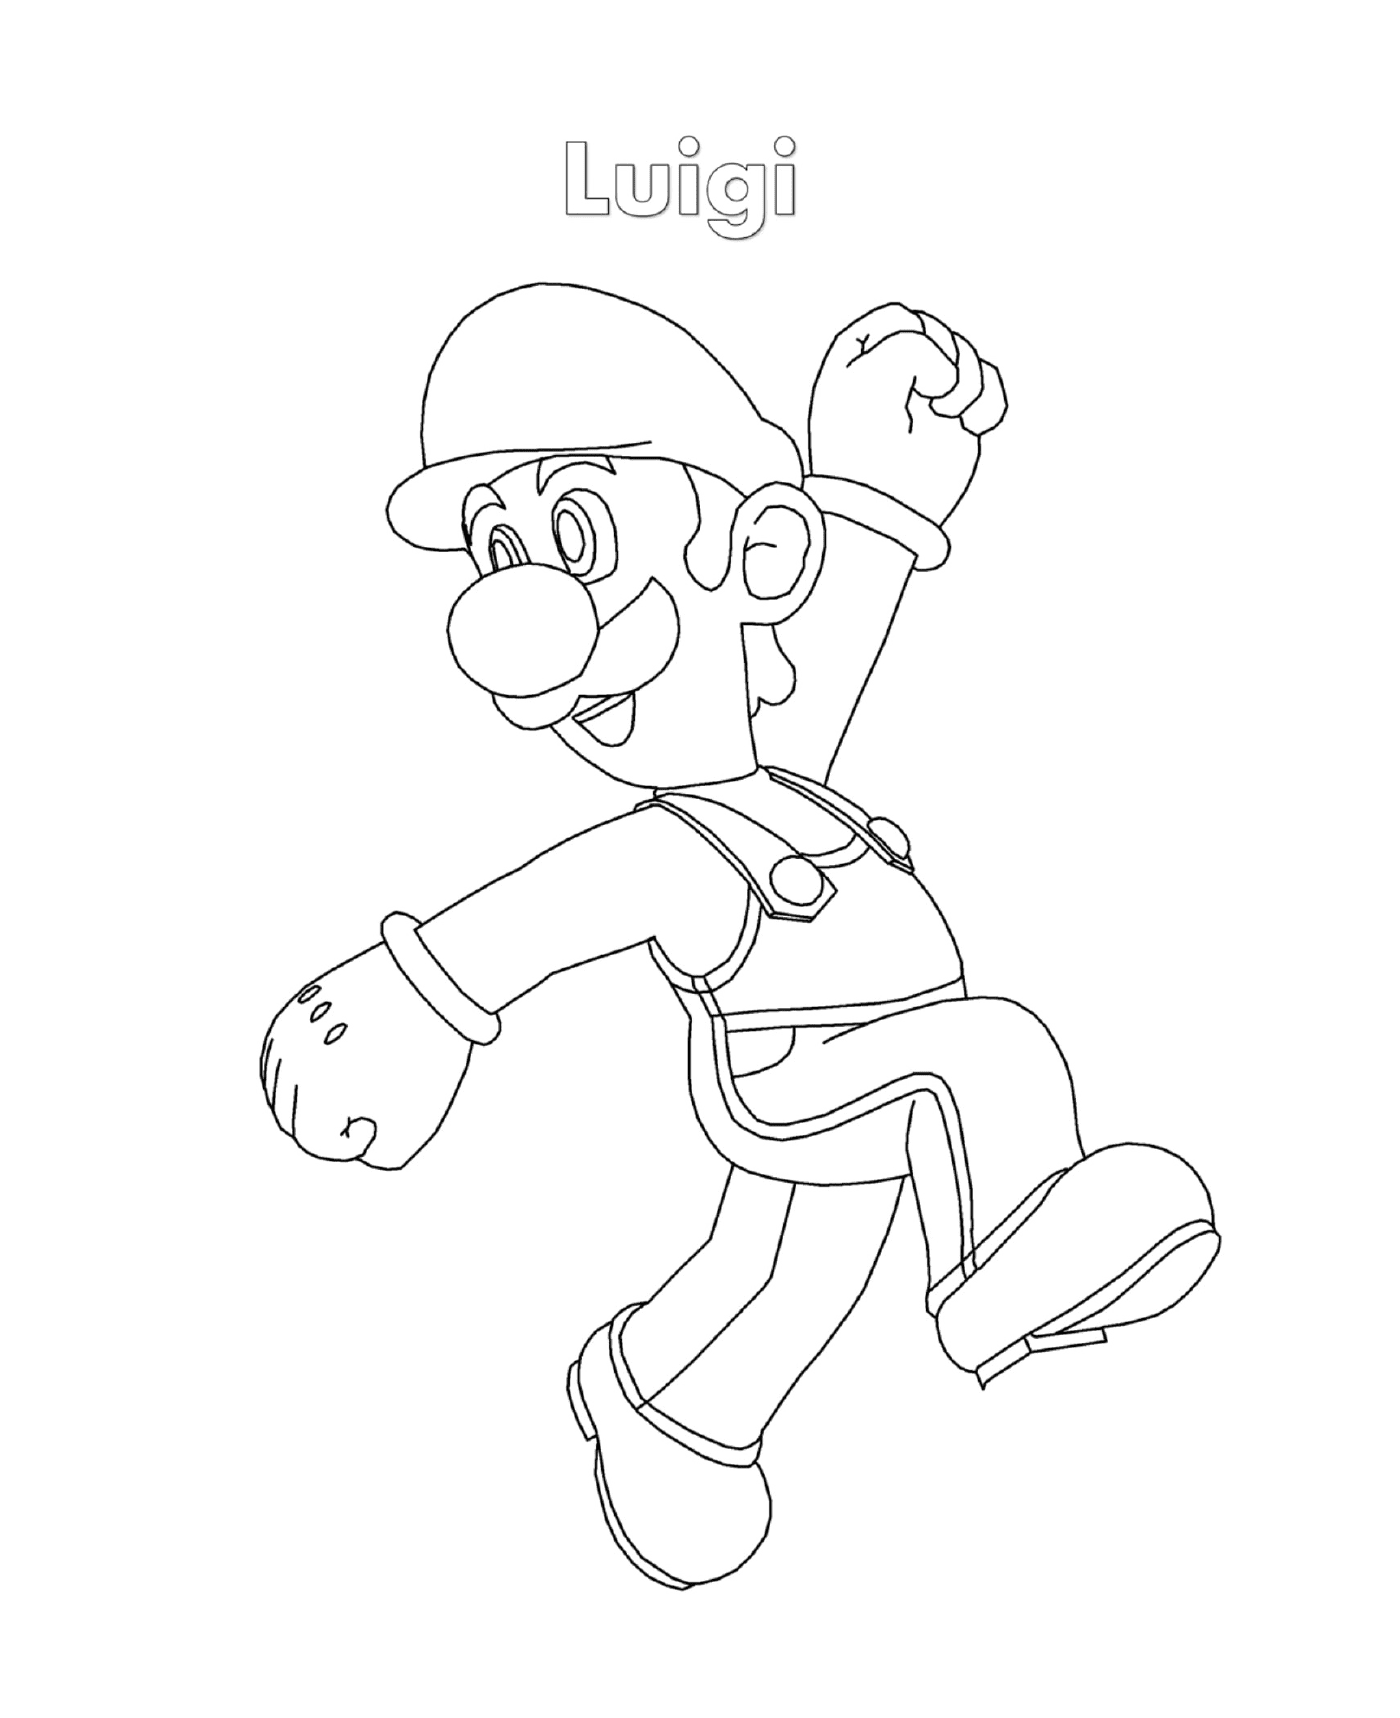  Luigi from Super Mario, a man running 